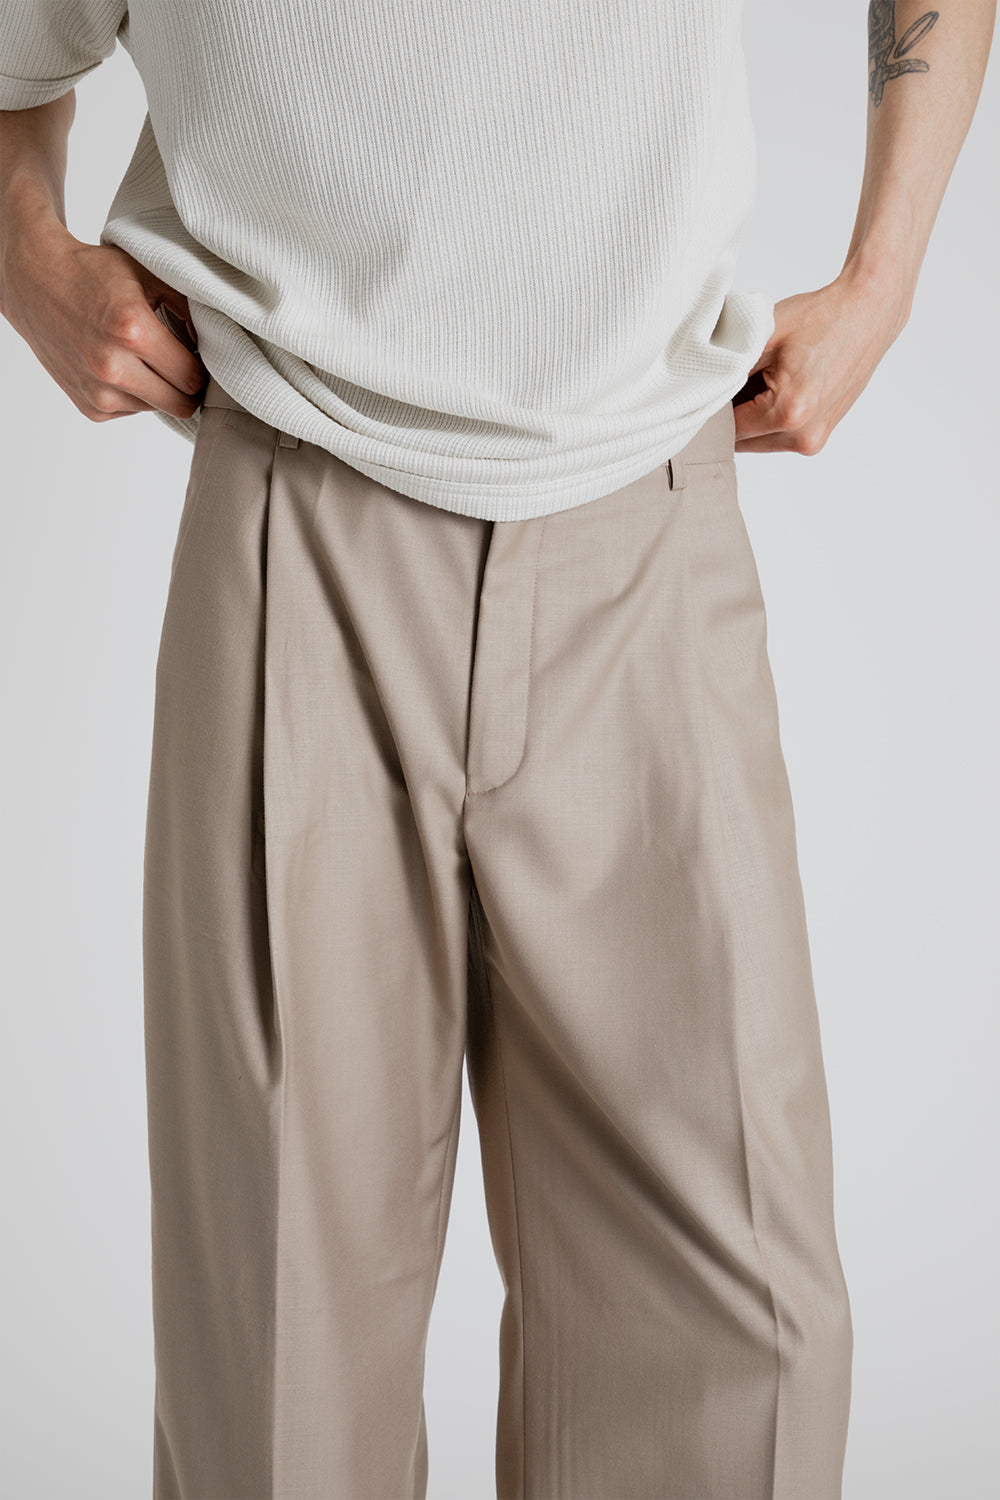 Frizmworks OG One Tuck Wide Slack Pants in Beige